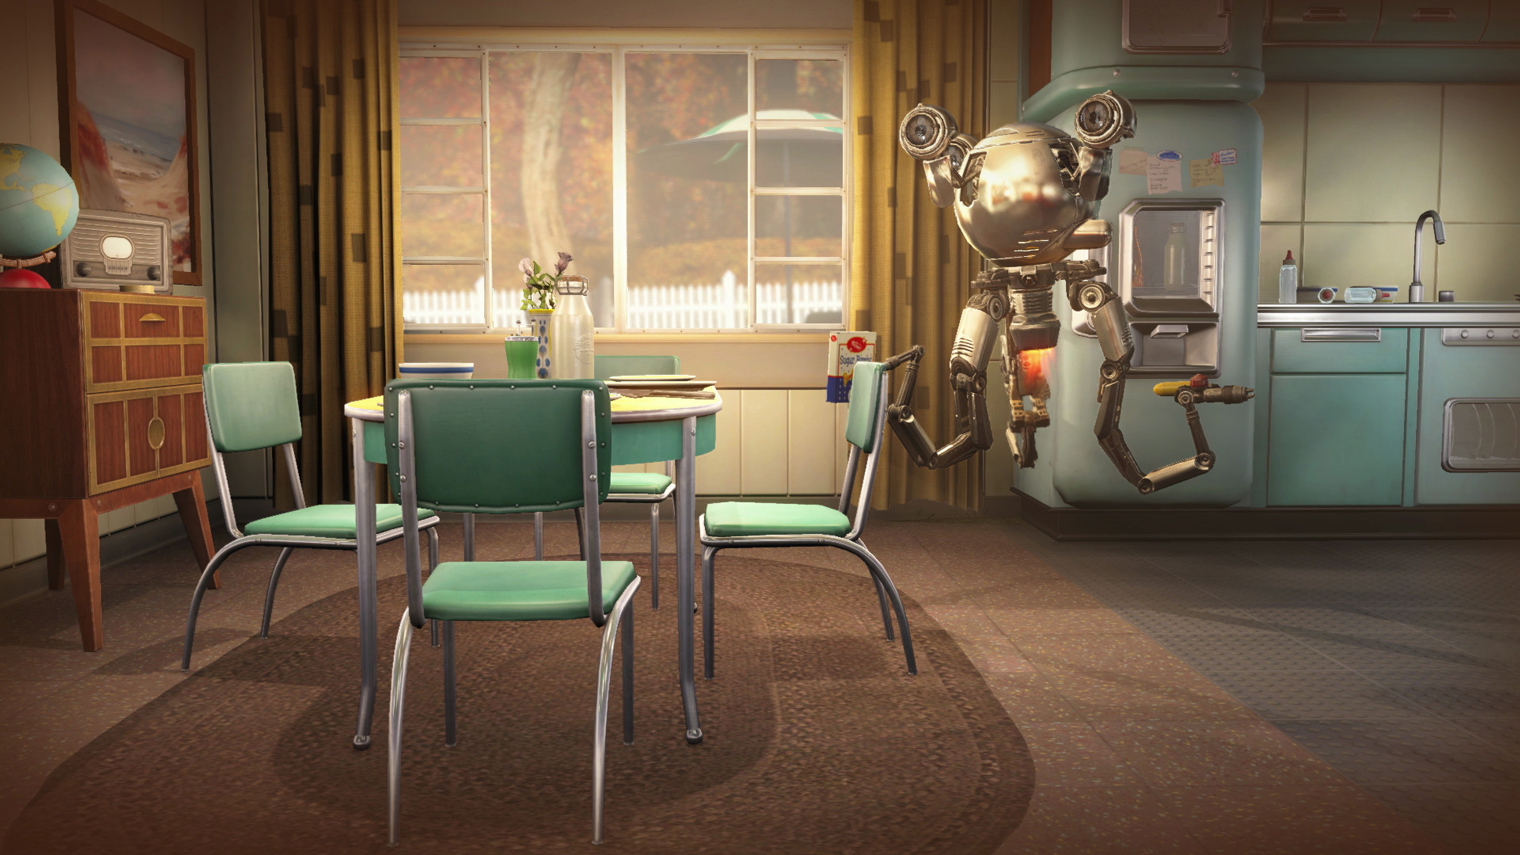 Пролог в Fallout 4 короткий — и это скорее плюс, так как проходить его раз за разом все равно утомительно. Кадр: Bethesda Softworks